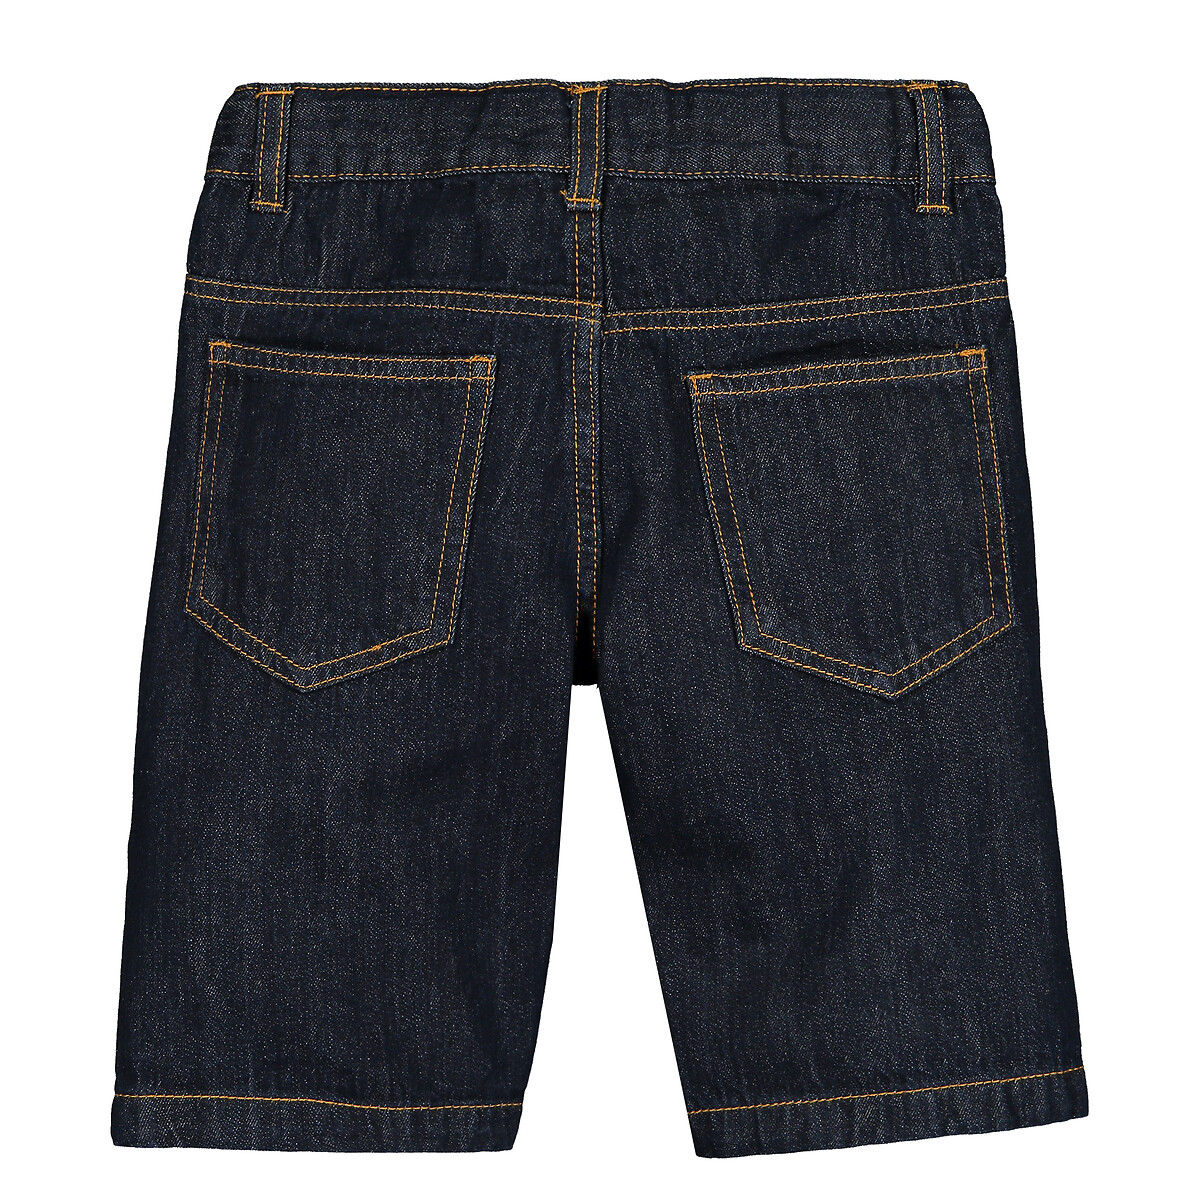 Бермуды La Redoute Из джинсовой ткани  3 синий, размер 3 - фото 2